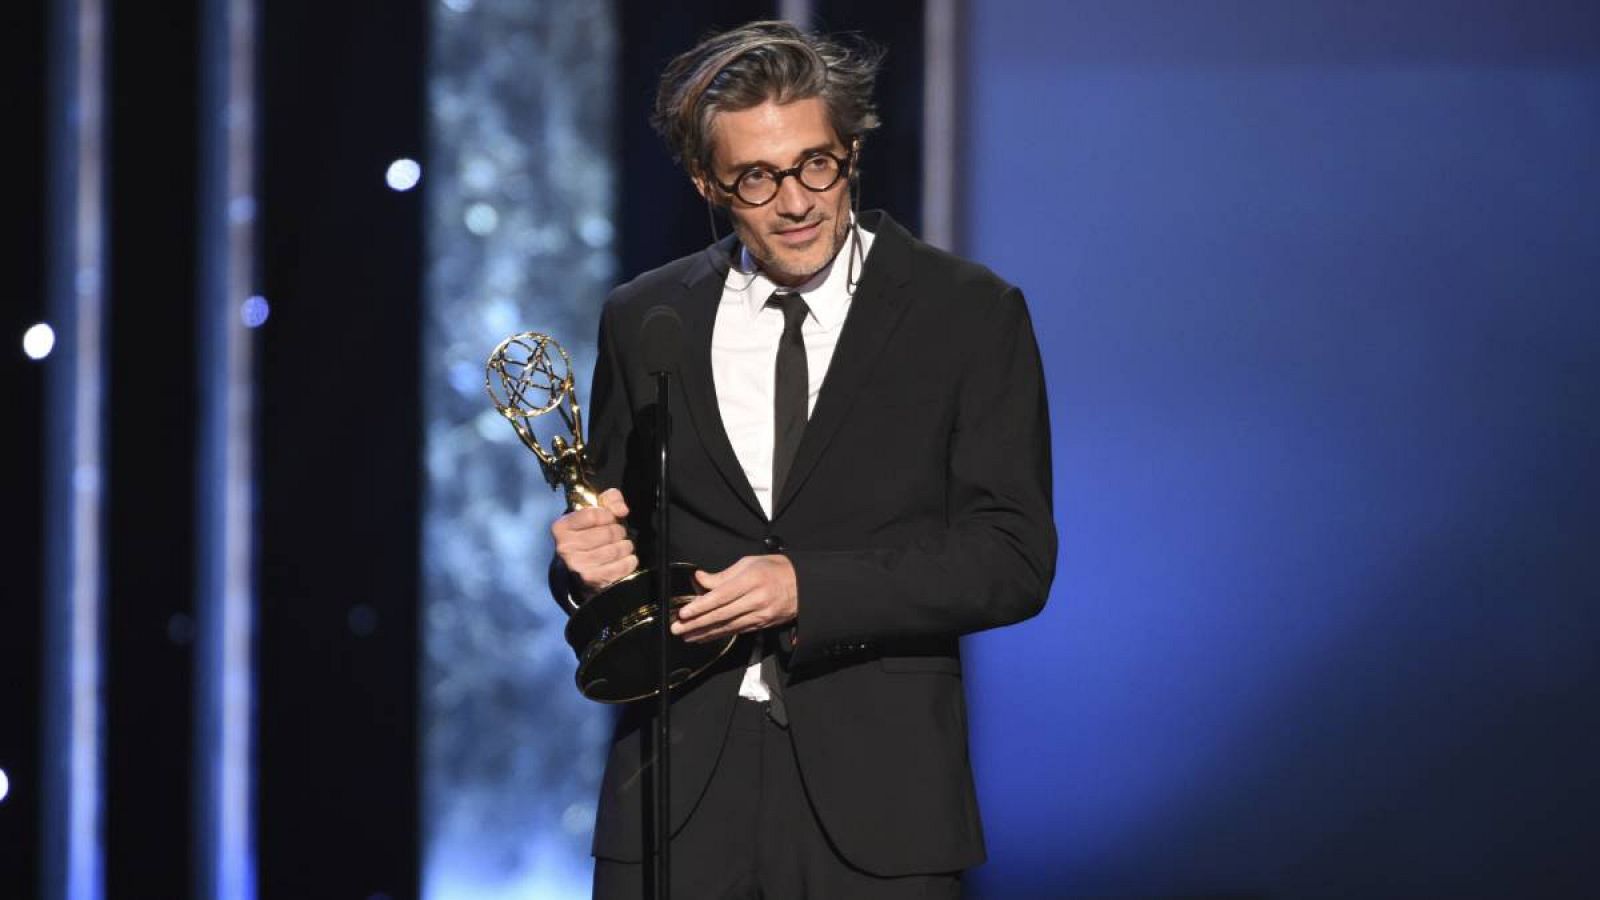 El director Alberto Mielgo acepta el premio por logros individuales sobresalientes en animación por 'Love, Death, and Robots' en los Premios Emmy de Artes Creativas 2019 en Los Ángeles.